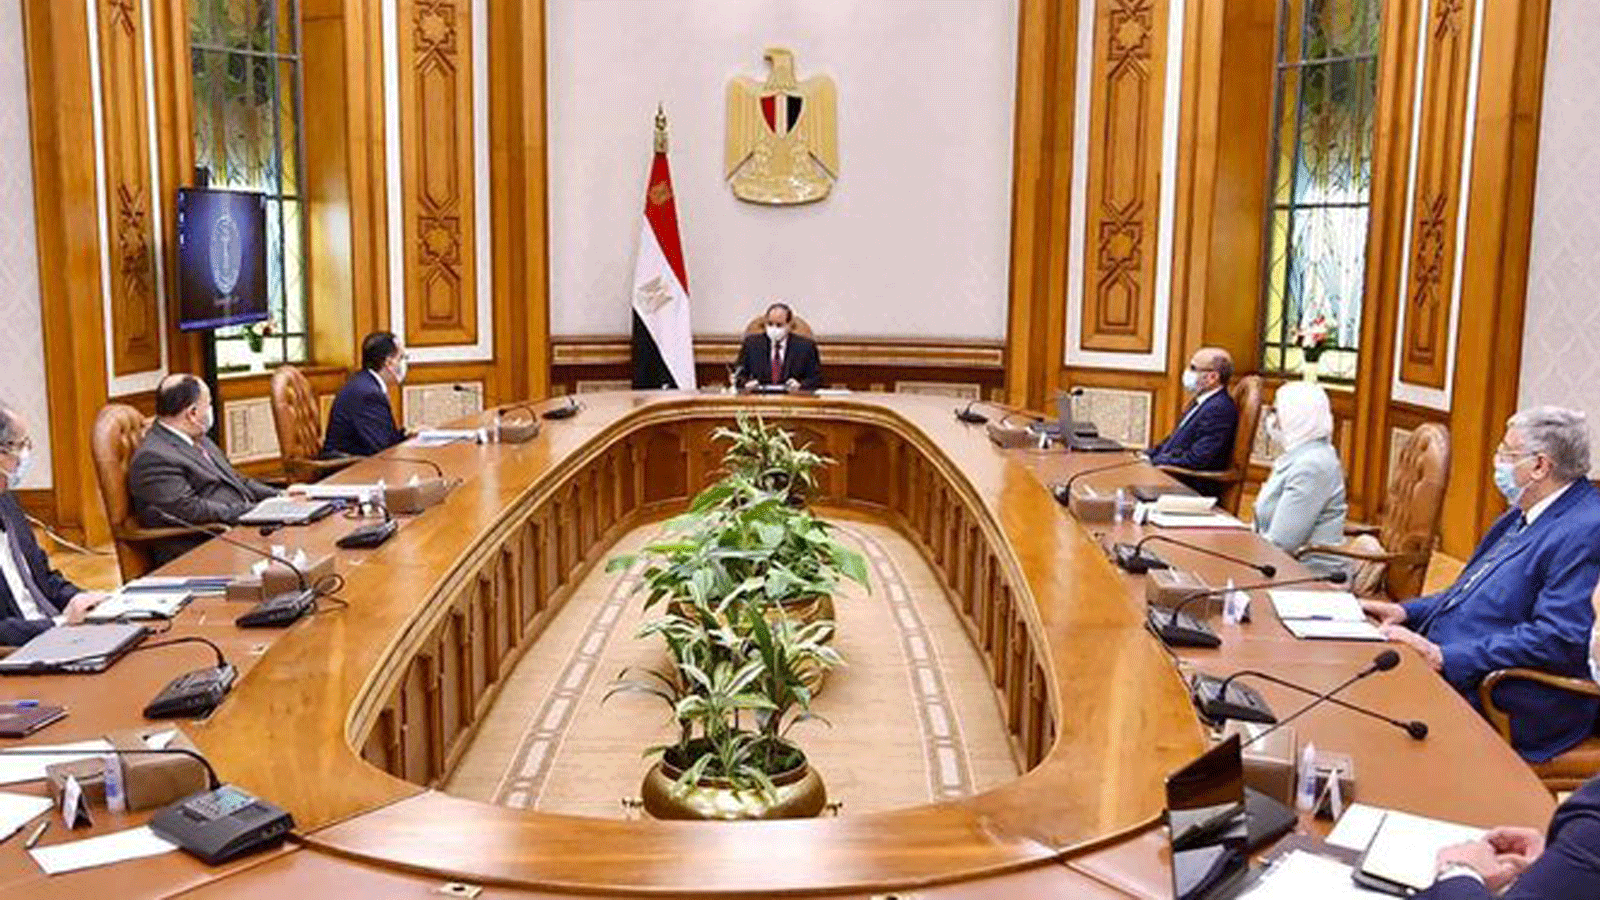 الرئيس المصري عبد الفتاح السيسي (وسط) يلتقي رئيس الوزراء مصطفى مدبولي (وسط - يسار) وأعضاء حكومته في القصر الرئاسي بالعاصمة القاهرة في ىب/ أغسطس 2021